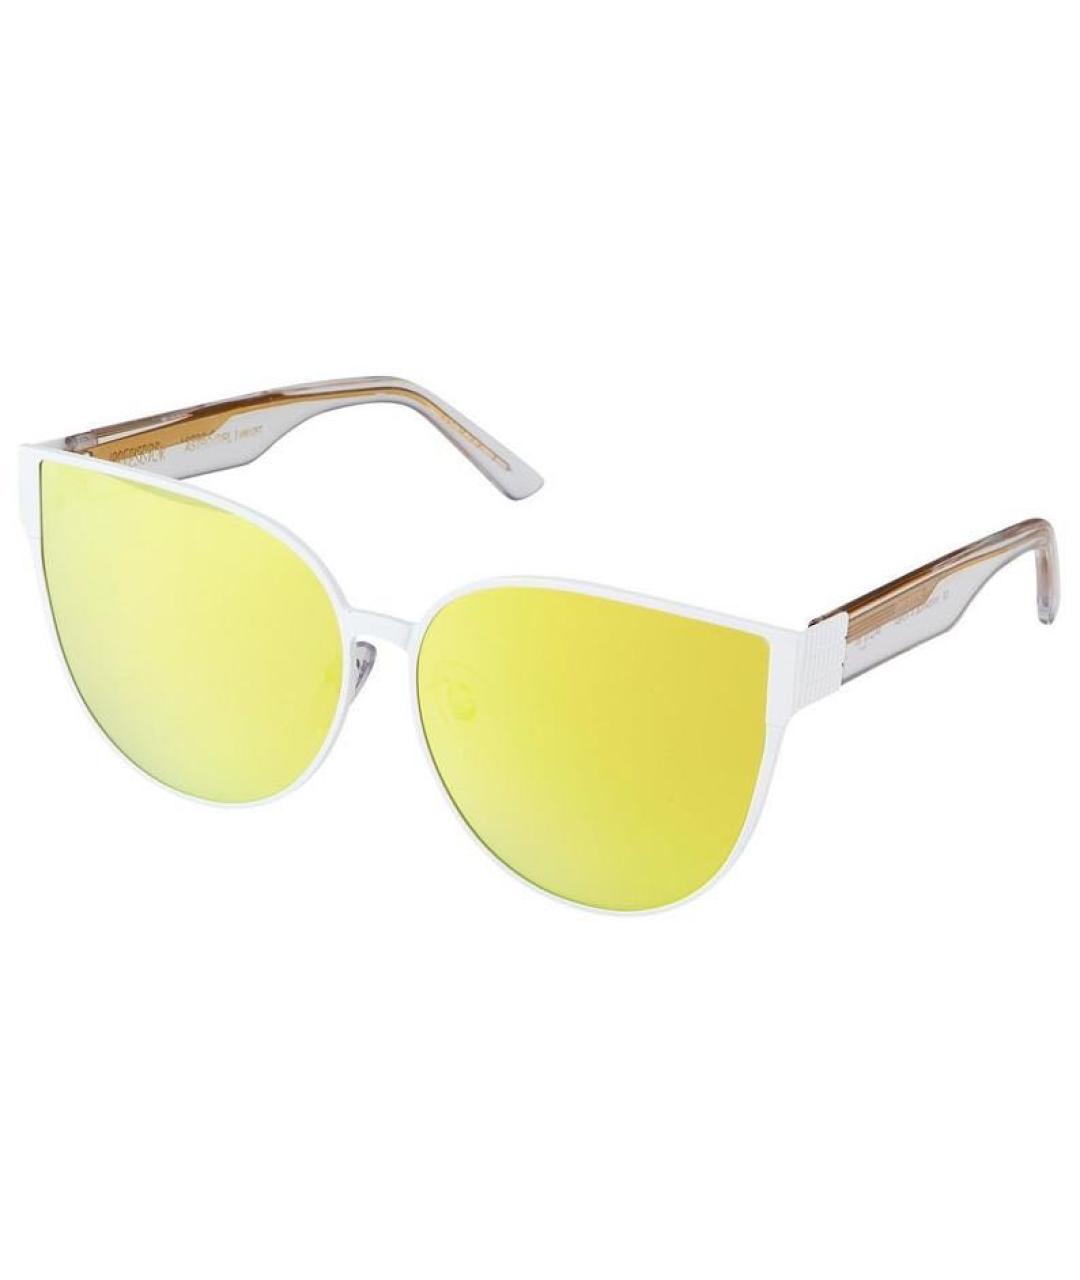 IRRESISTOR Желтые металлические солнцезащитные очки, фото 8